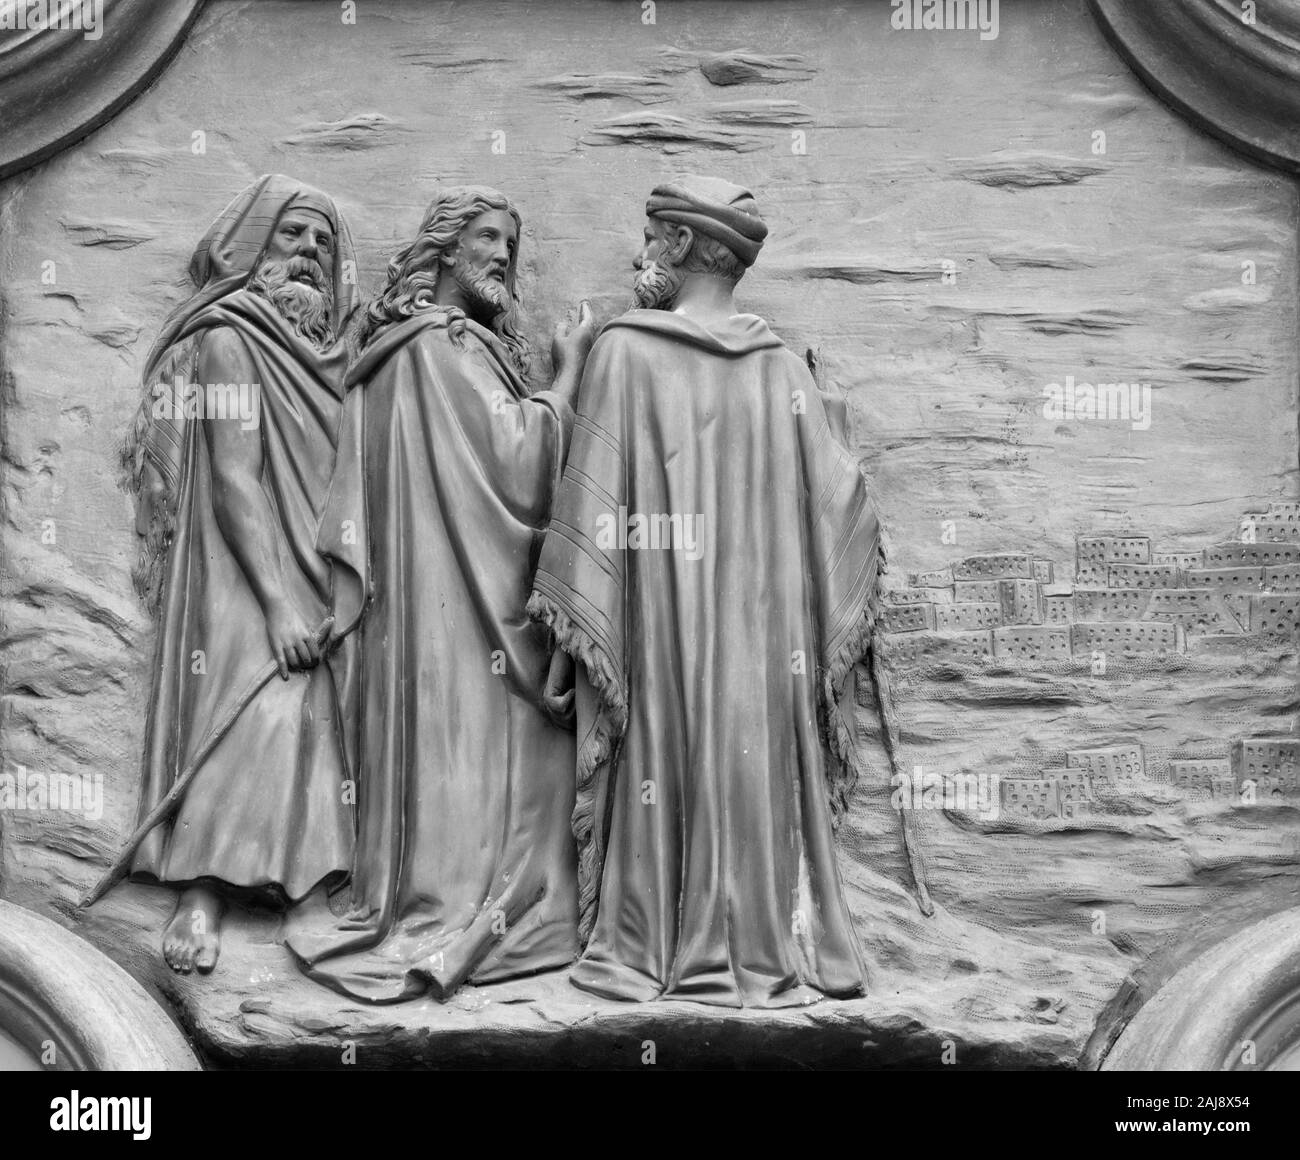 ACIREALE, ITALIE - 11 avril 2018 : allégement de Bronze de Jésus et les apôtres sur la Jérusalem de la gate de Basilique Collegiata di San Sebastiano. Banque D'Images